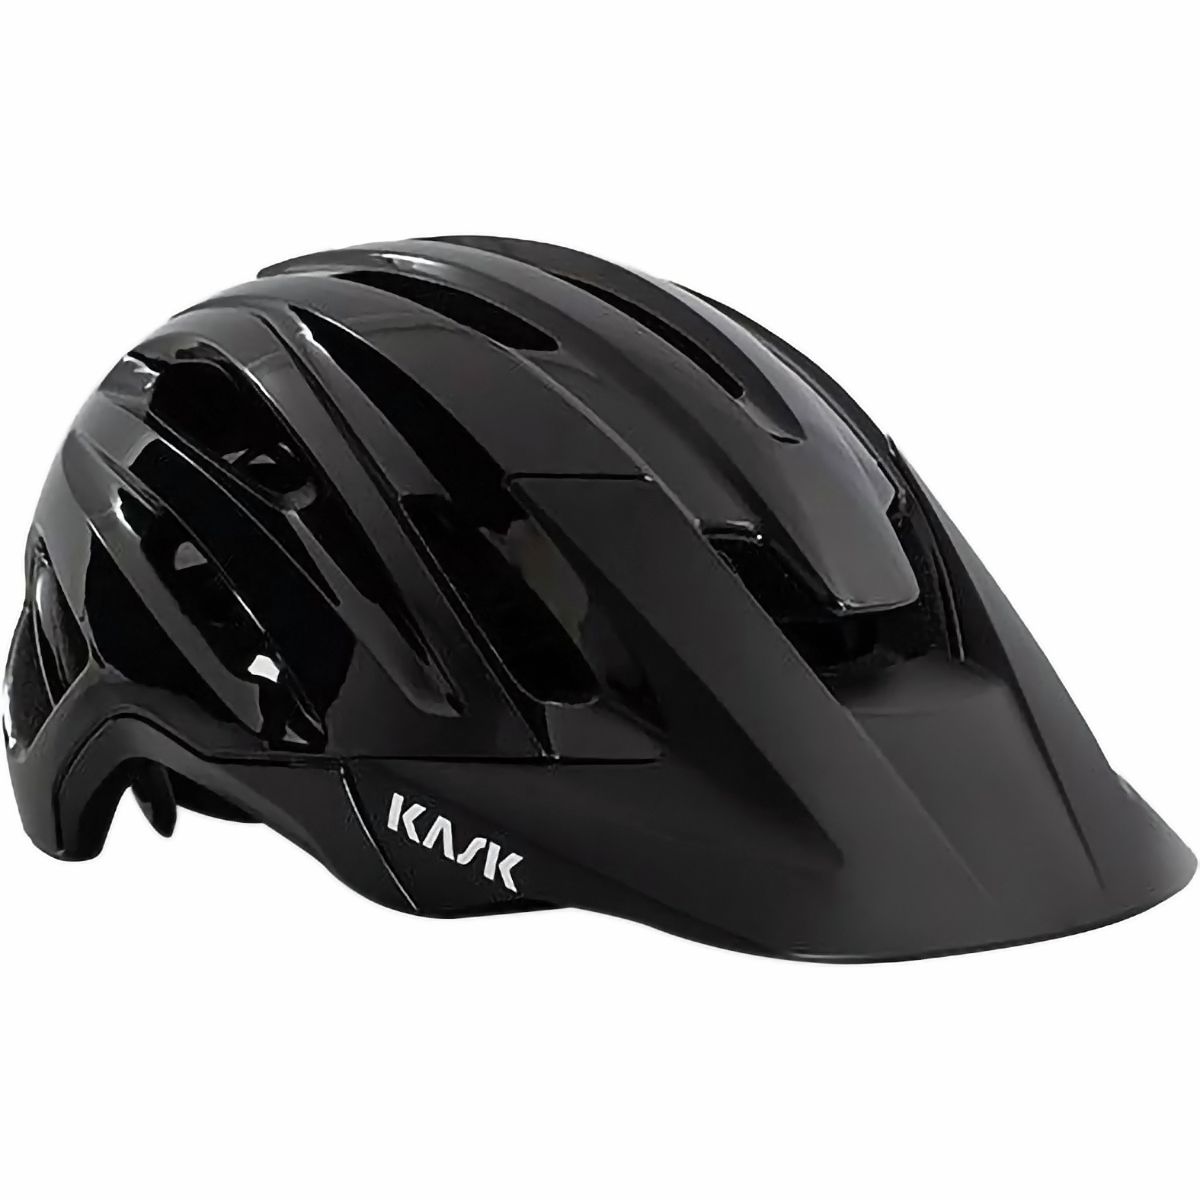 Велосипедный шлем caipi Kask, черный